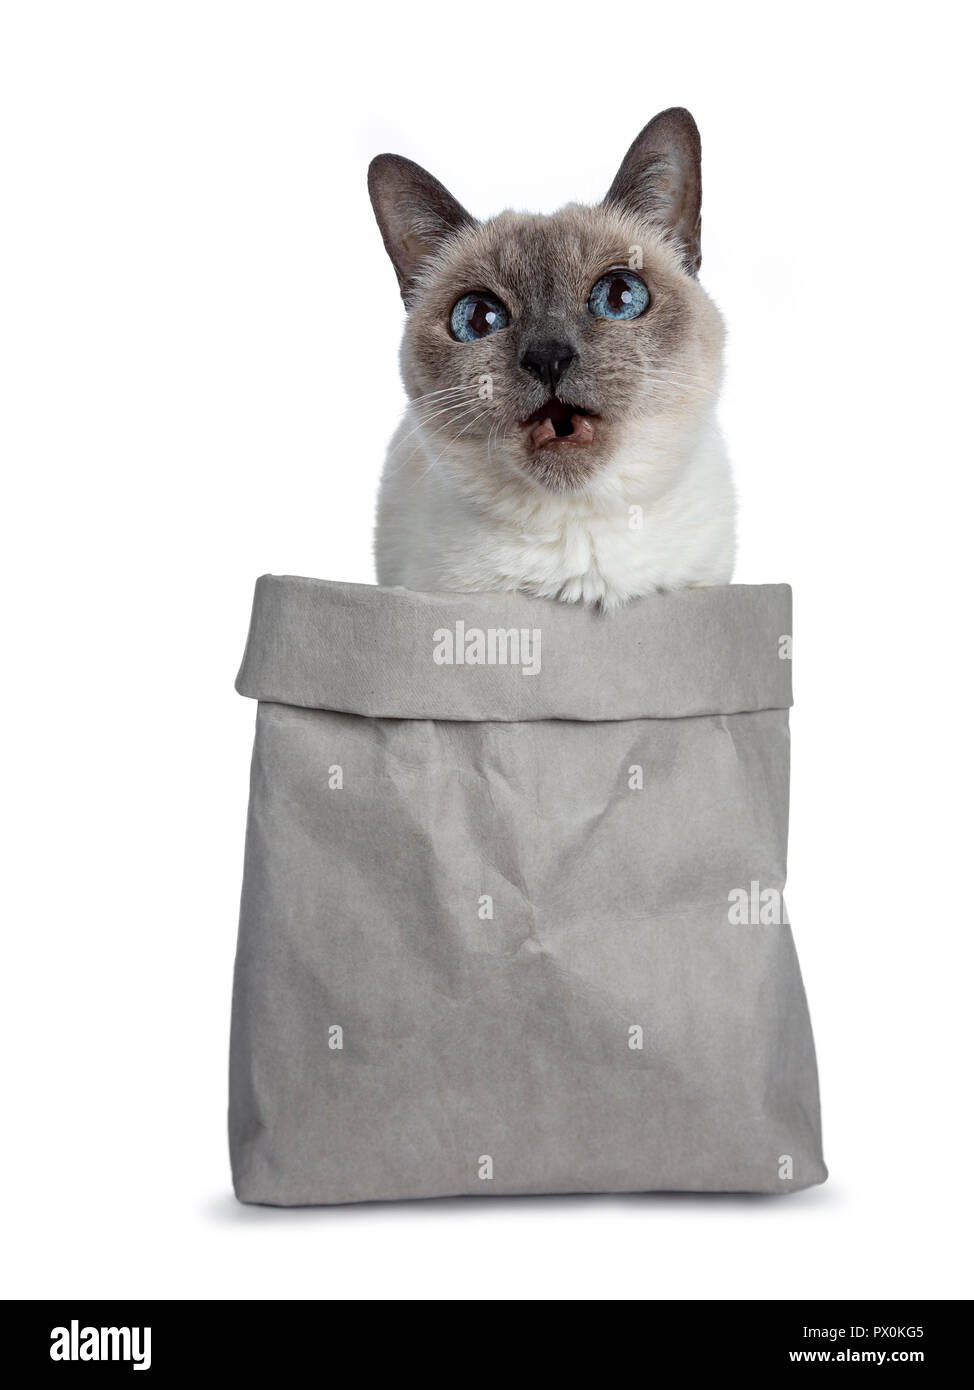 Point bleu Senior Thai cat sitting en gris sac, à la recherche des yeux bleu sage et bouche édentée ouverte. Isolé sur fond blanc. Banque D'Images